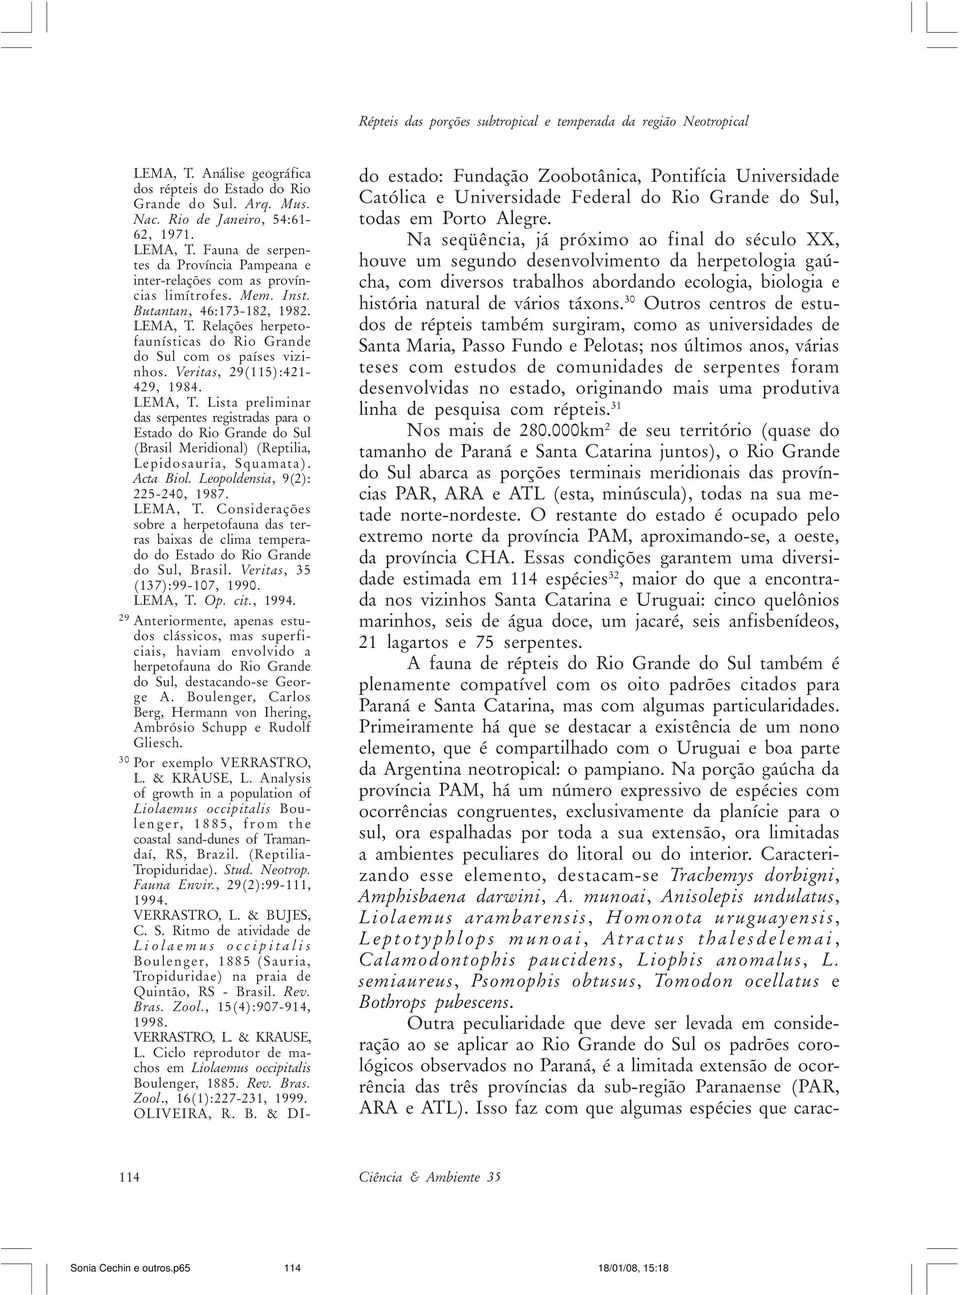 Acta Biol. Leopoldensia, 9(2): 225-240, 1987. LEMA, T. Considerações sobre a herpetofauna das terras baixas de clima temperado do Estado do Rio Grande do Sul, Brasil. Veritas, 35 (137):99-107, 1990.